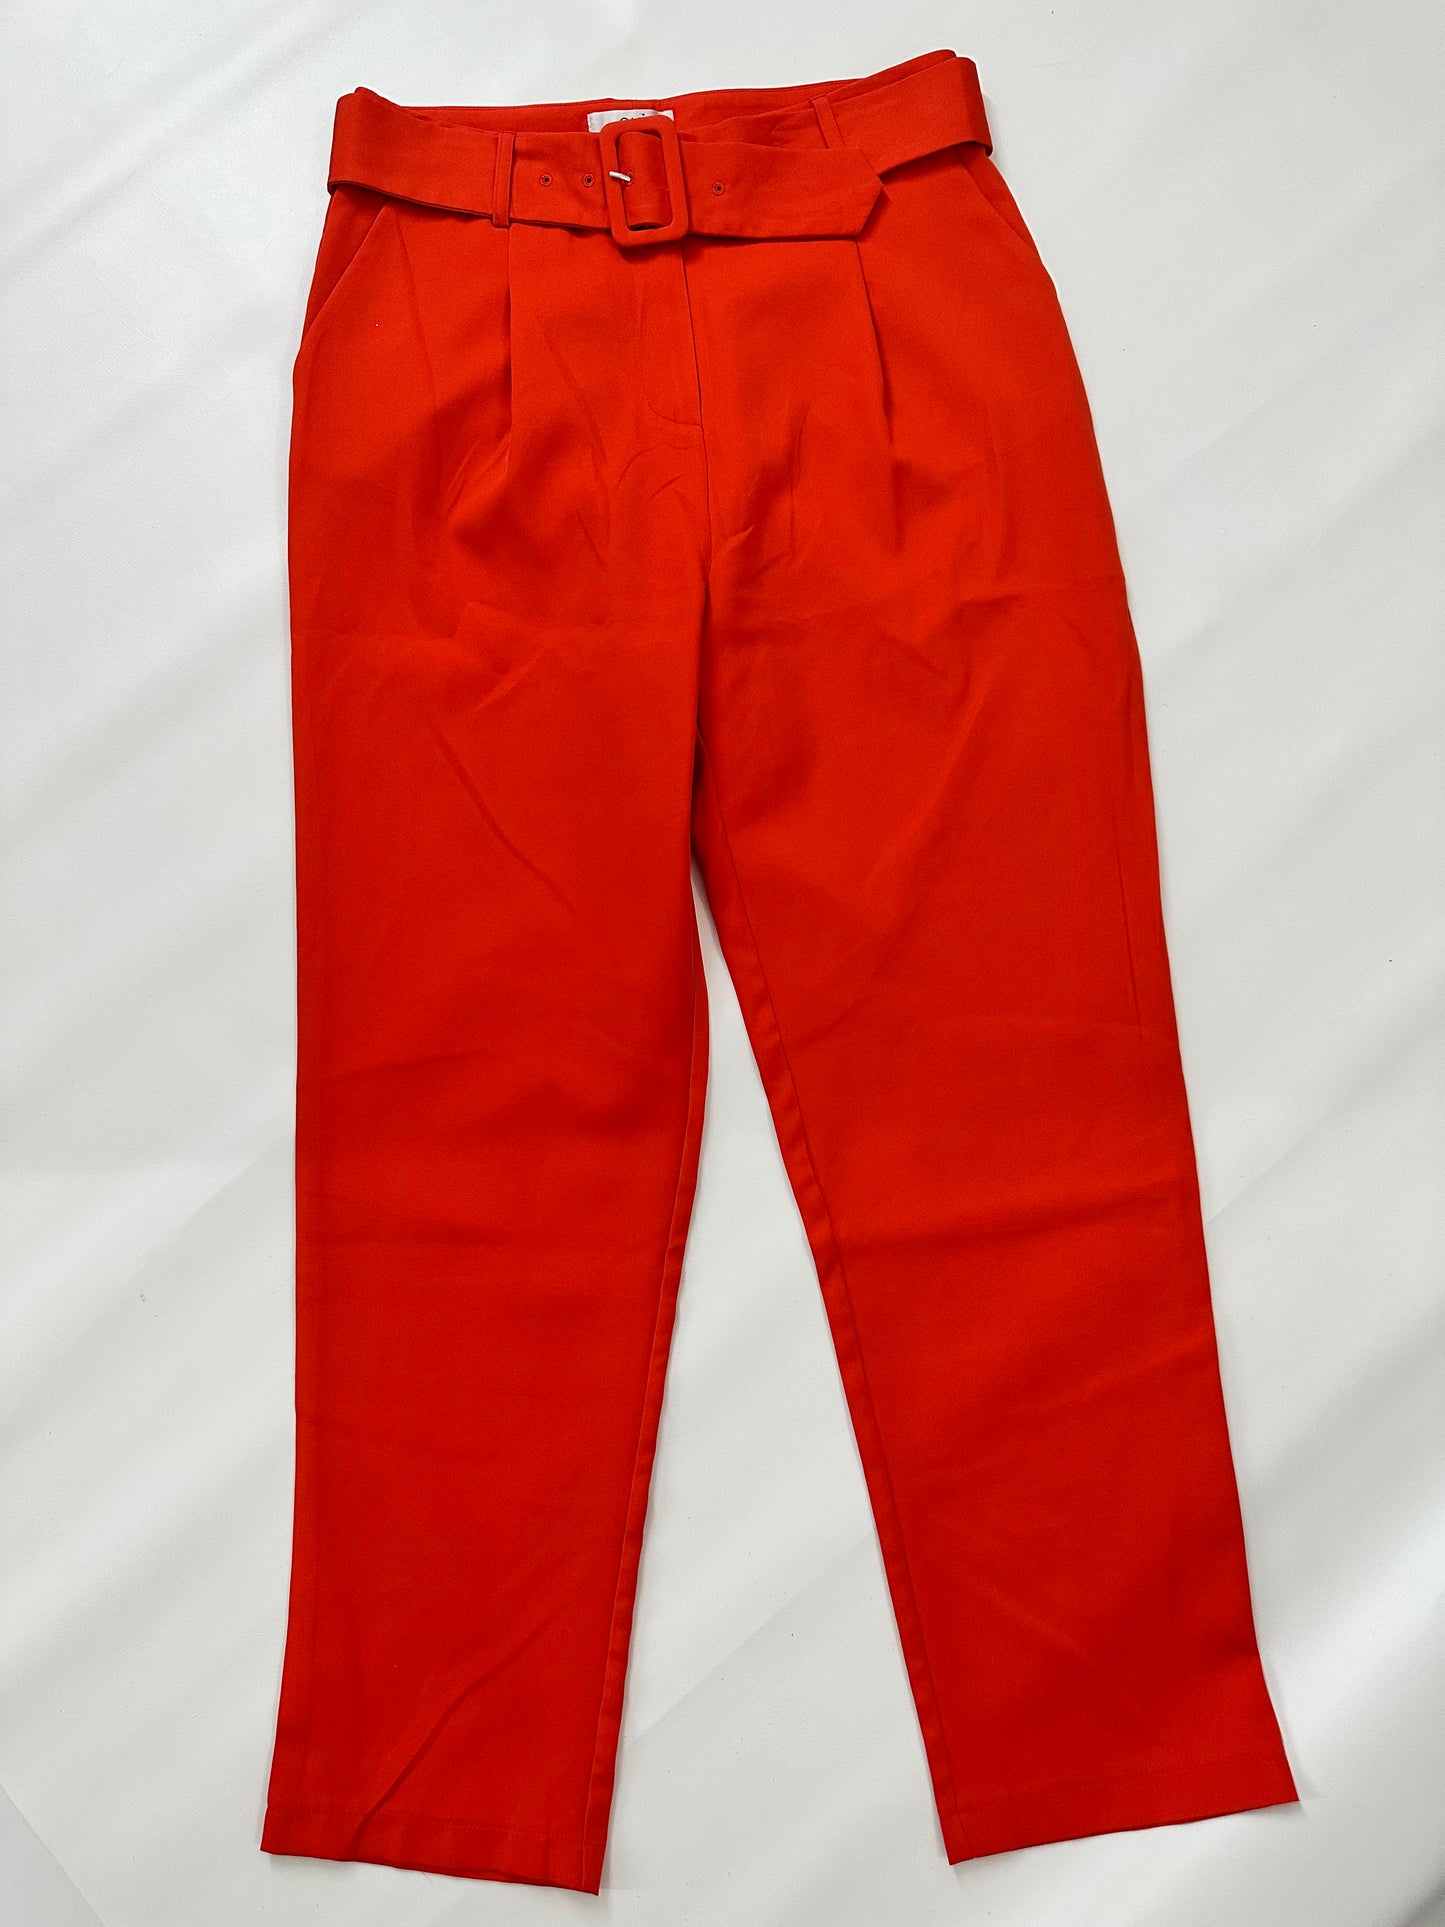 OVI orange pant Large